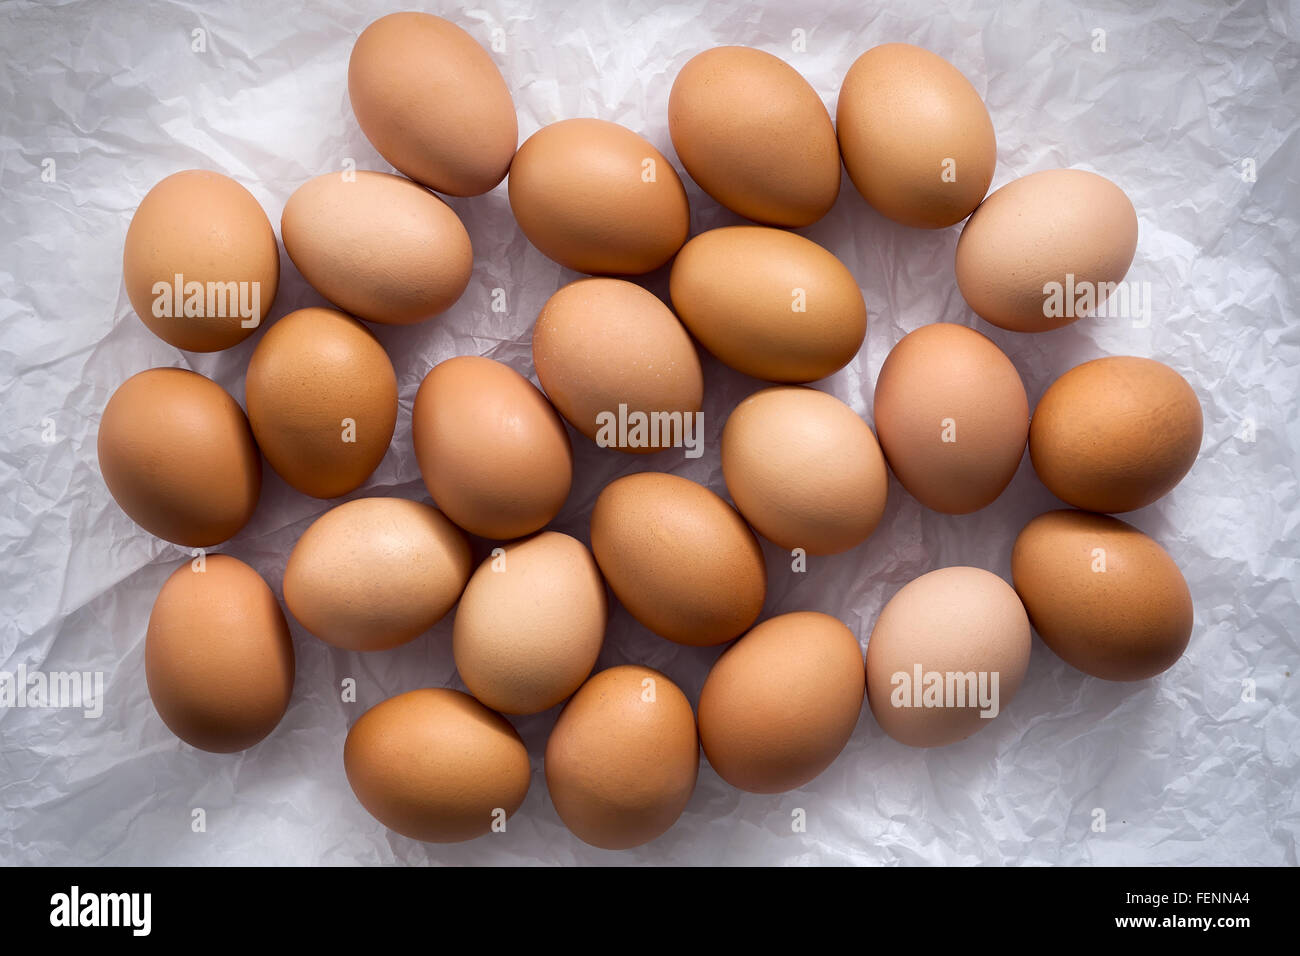 Huevos de gallina flat todavía ponen la vida con comida fresca cruda elegantes aves ingredientes saludables de colesterol proteína vitamina óxido natural Foto de stock